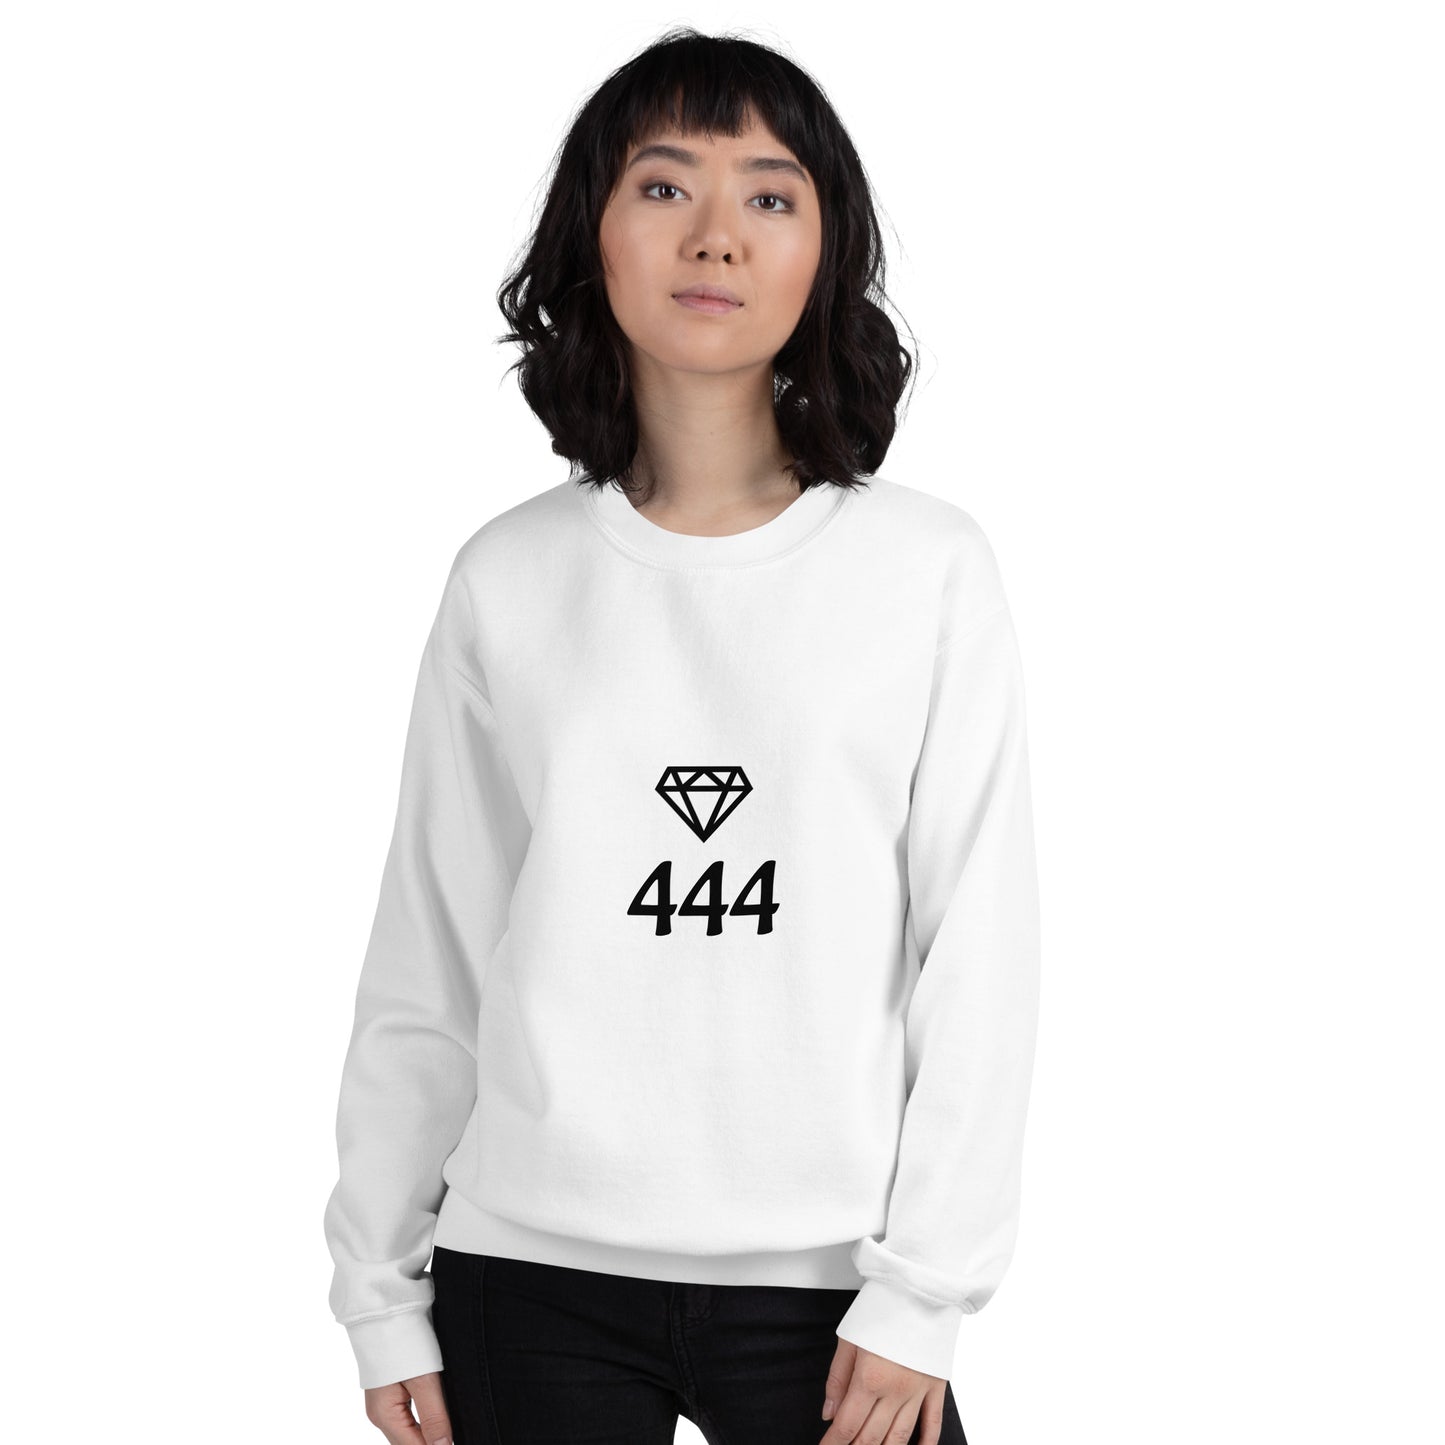 444 Original Unisex Sweater